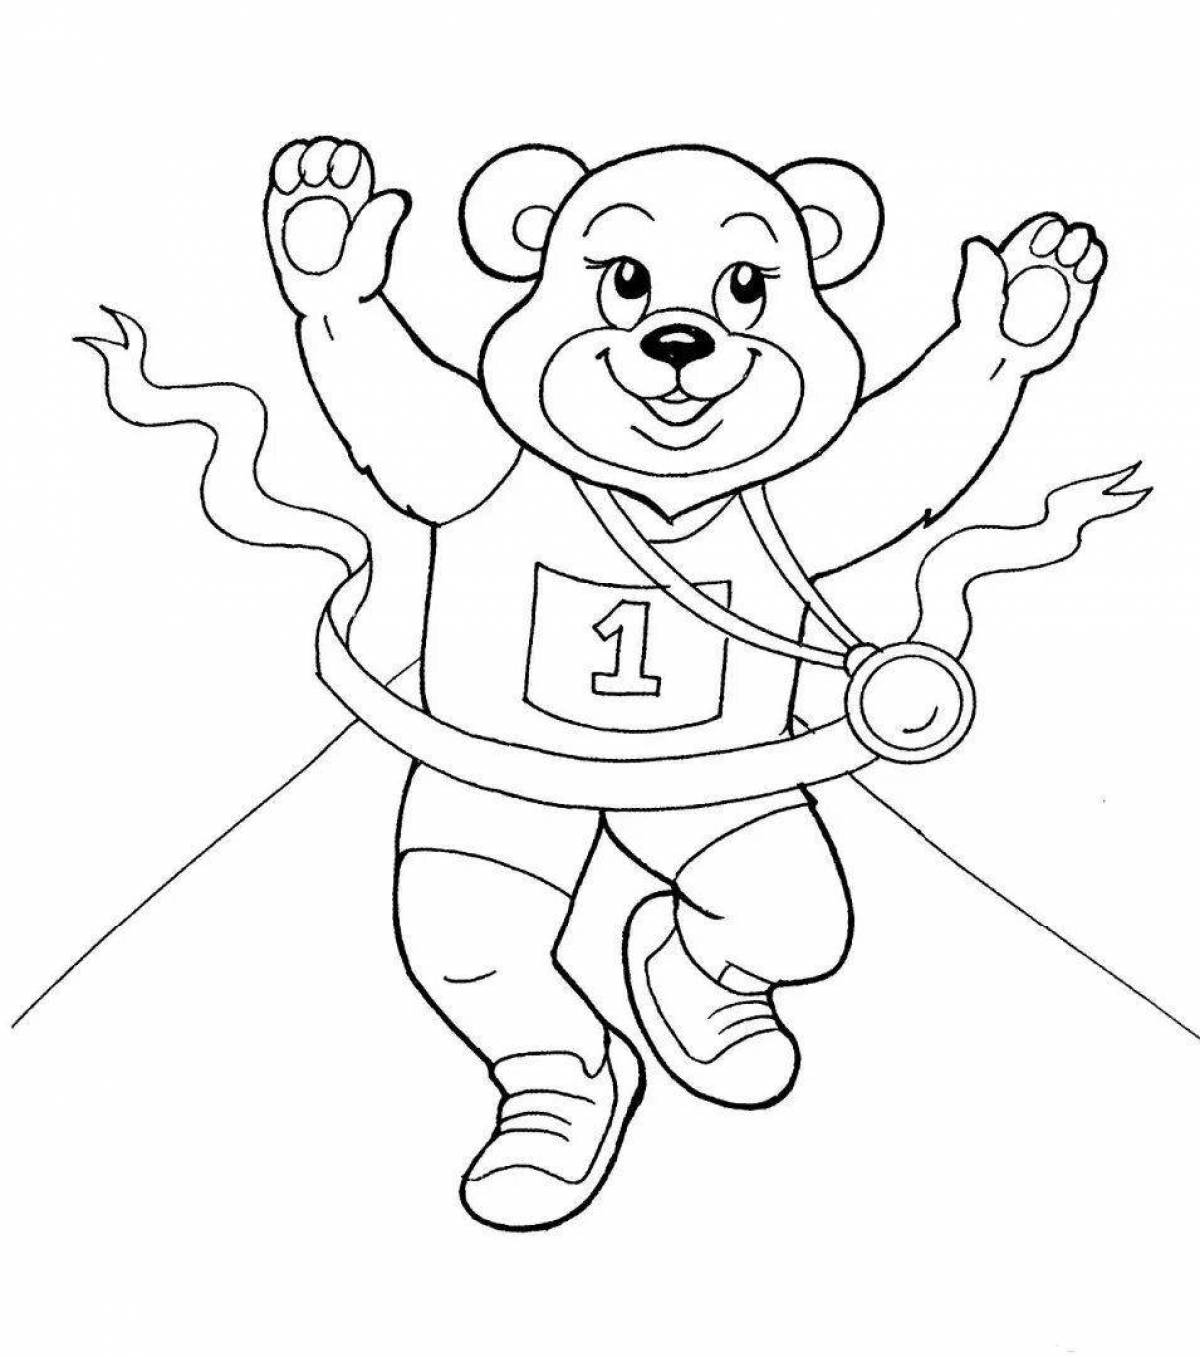 Олимпийский мишка для детей #5